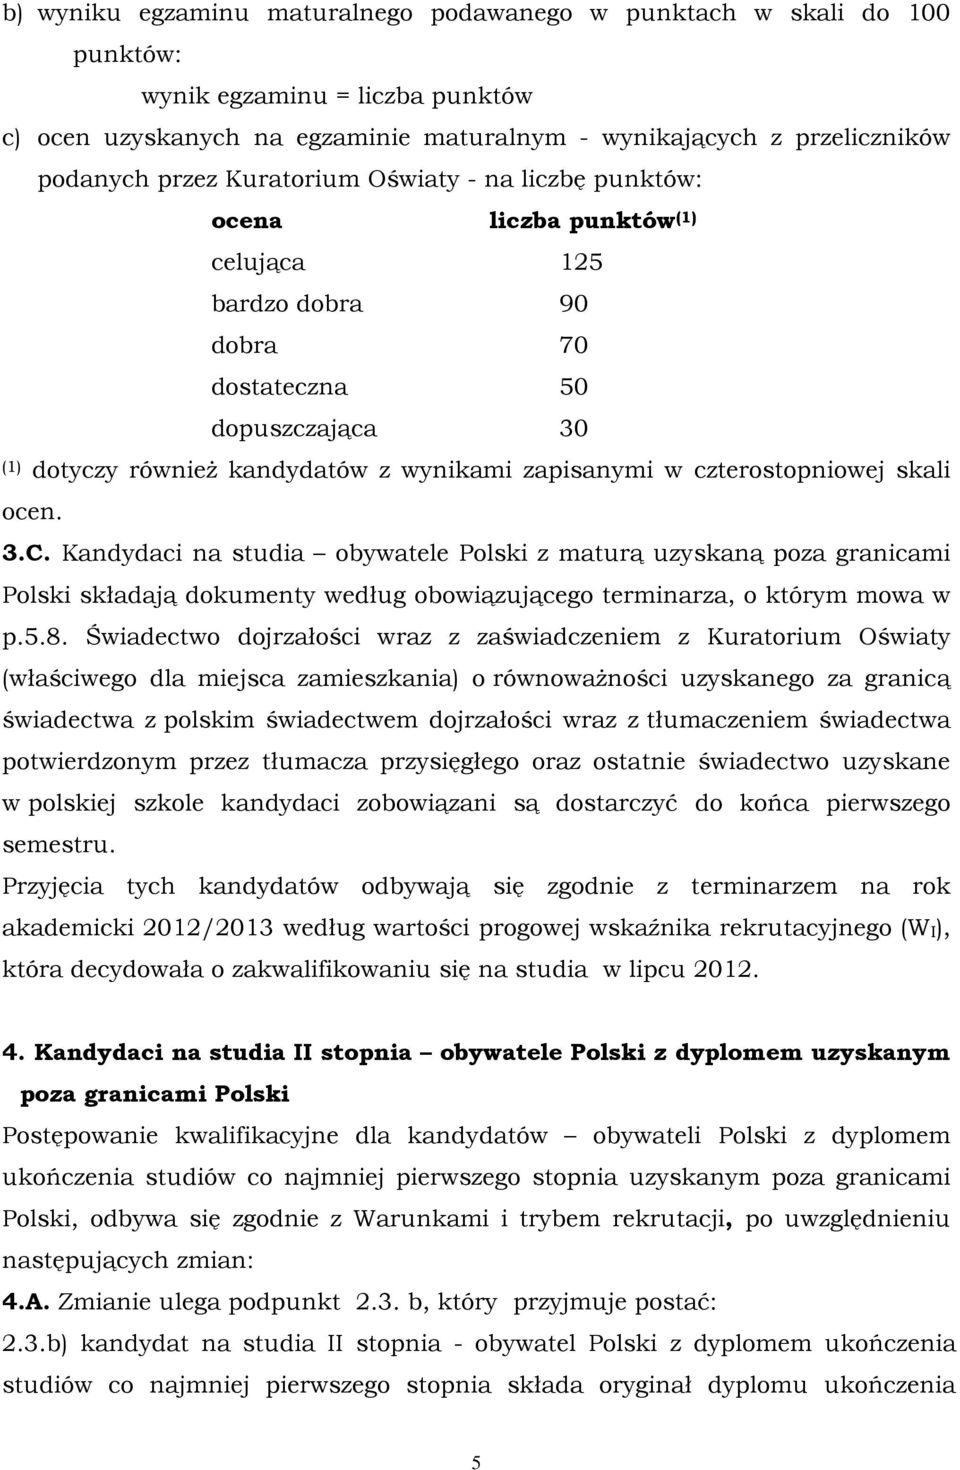 czterostopniowej skali ocen. 3.C. Kandydaci na studia obywatele Polski z maturą uzyskaną poza granicami Polski składają dokumenty według obowiązującego terminarza, o którym mowa w p.5.8.